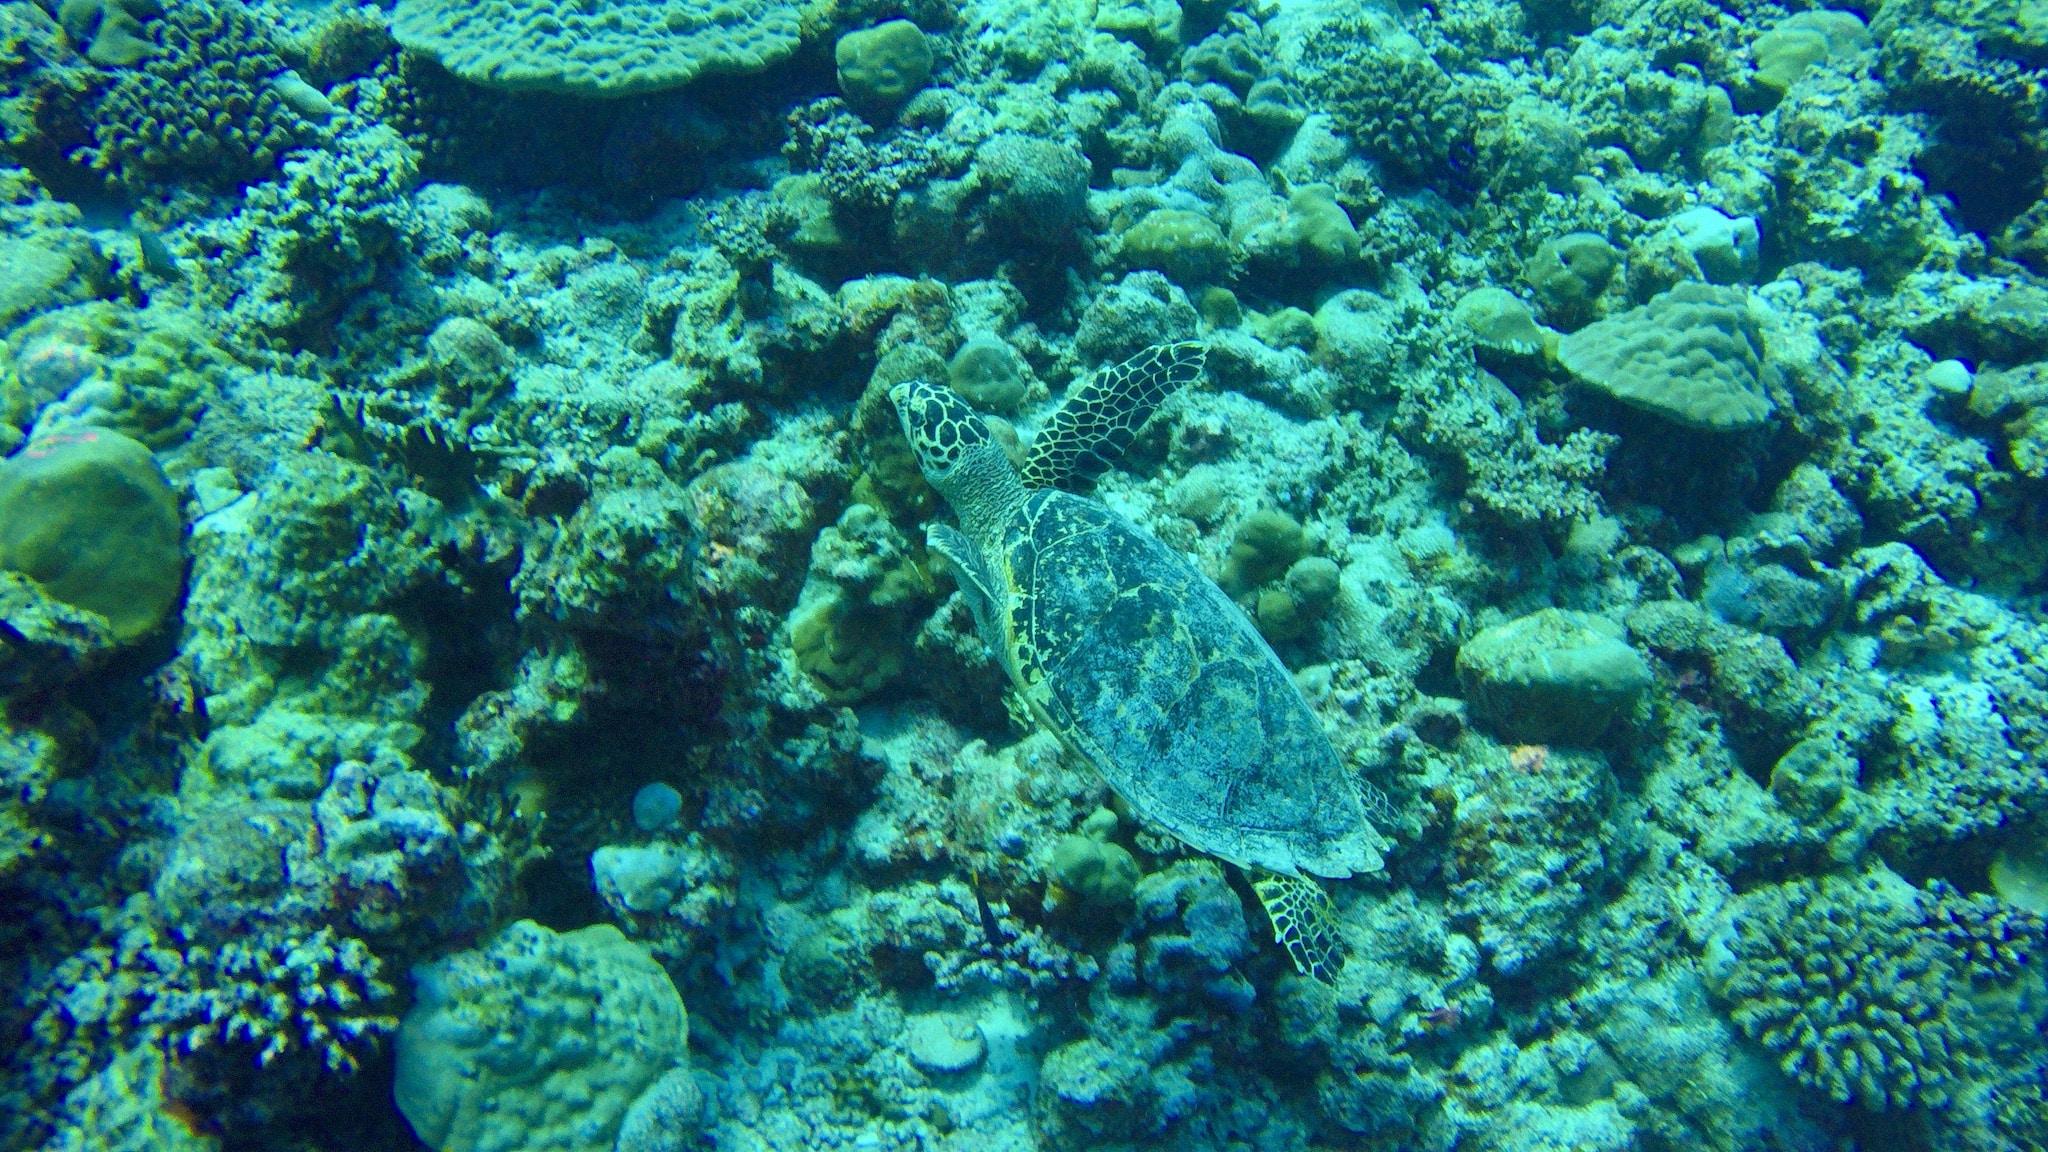 Les tortues sont omniprésentes sur Coco Bodu Hithi - elles peuvent également être trouvées lors de plongées en apnée dans le lagon et sur le récif de la maison. Photo: Sascha Tegtmeyer Rapport de voyage Expériences Coco Bodu Hithi Maldives